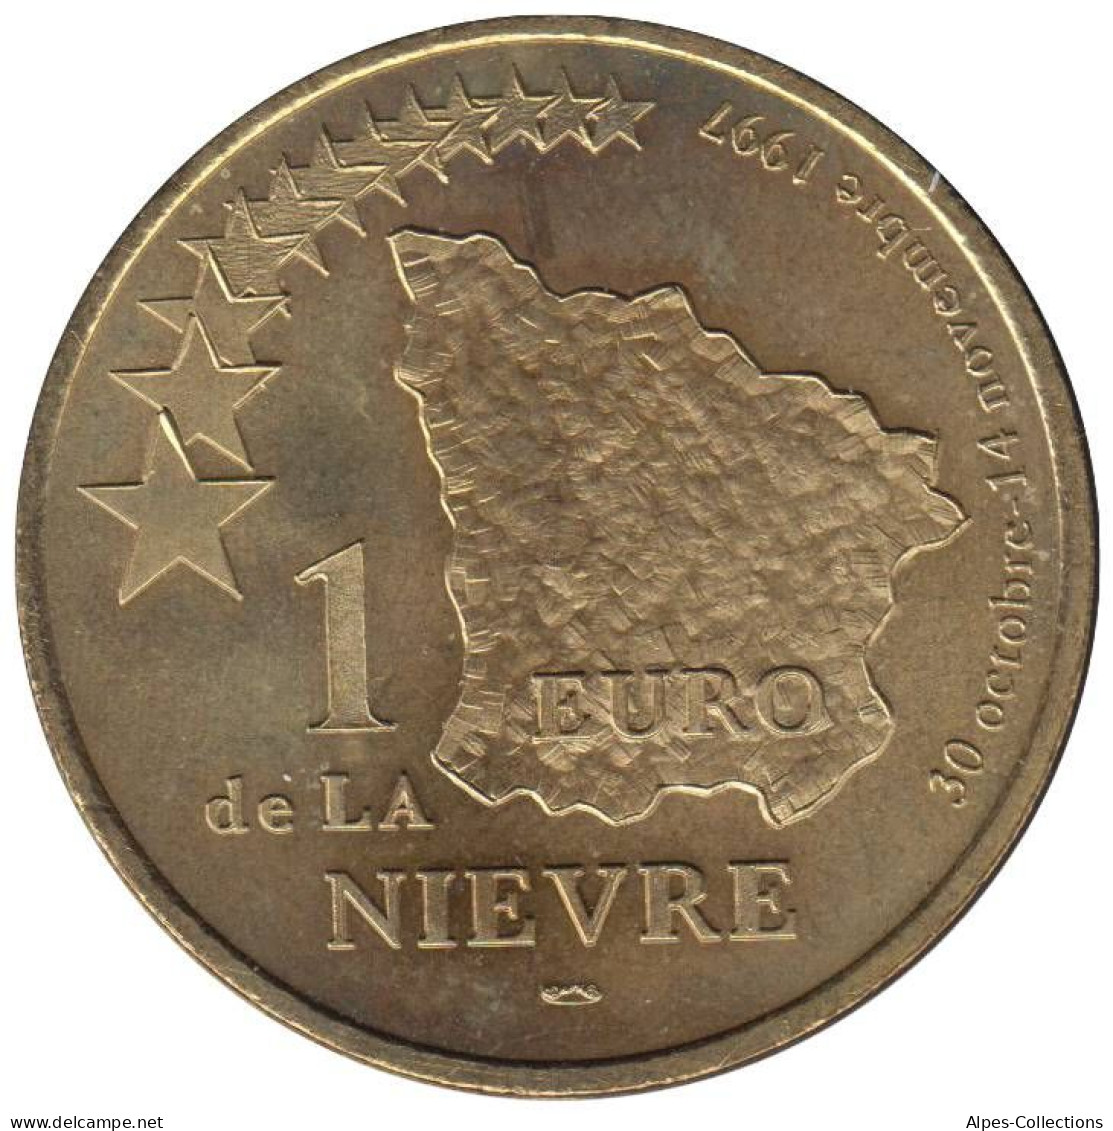 NIEVRE - EU0010.3 - 1 EURO DES VILLES - Réf: T341 - 1997 - Euro Der Städte